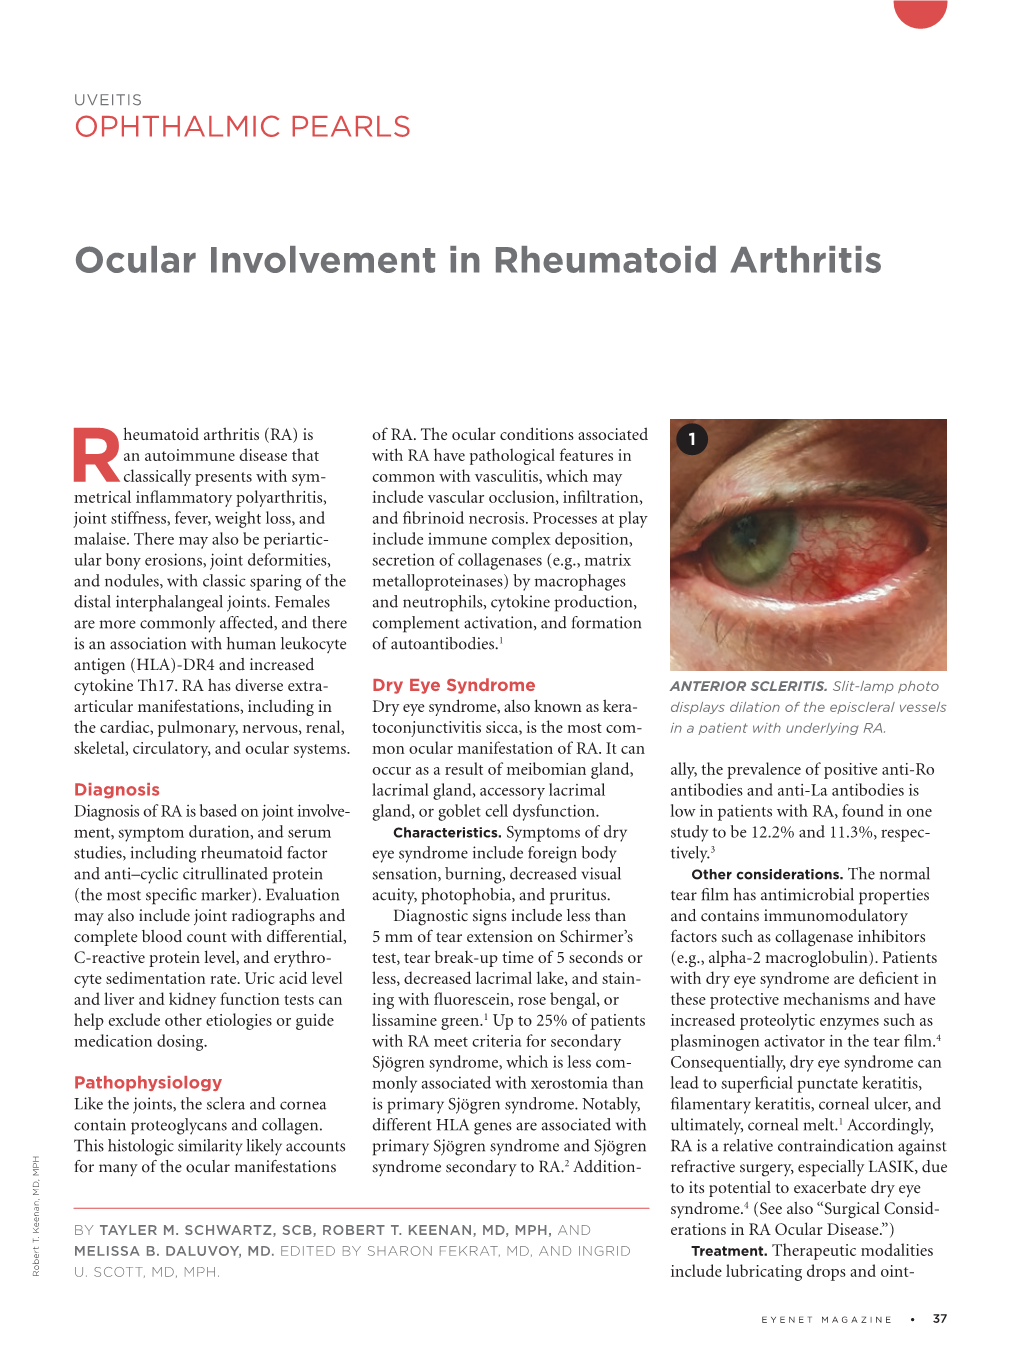 Ocular Involvement in Rheumatoid Arthritis